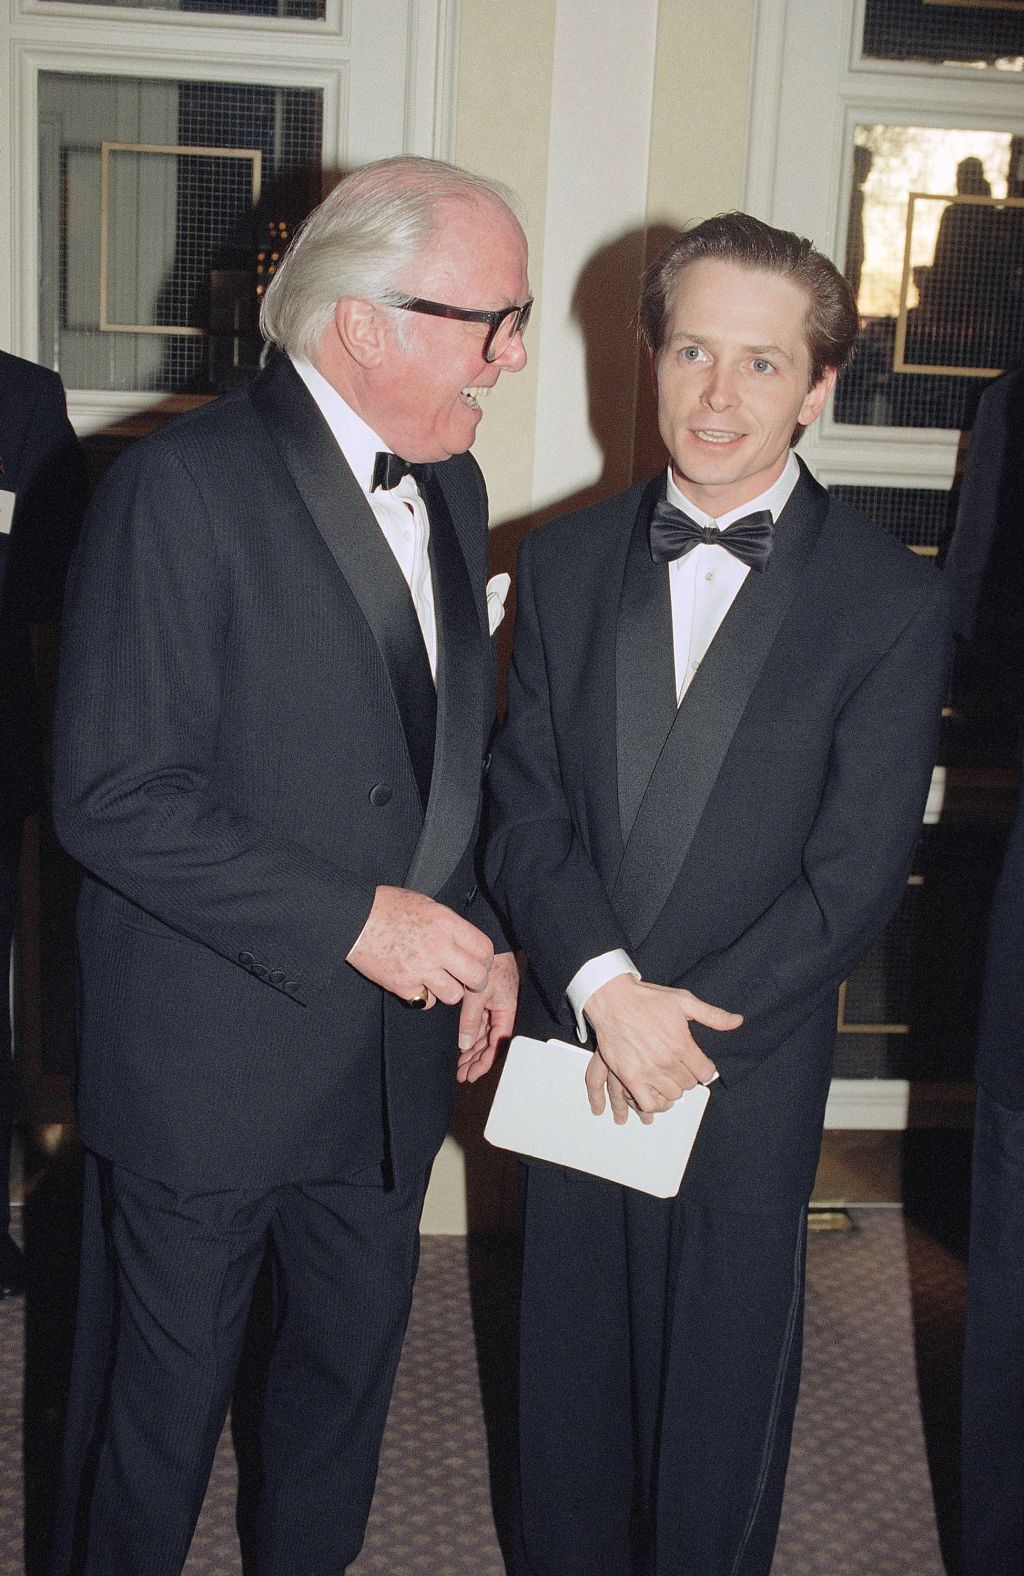 Photos: Michael J. Fox through the years